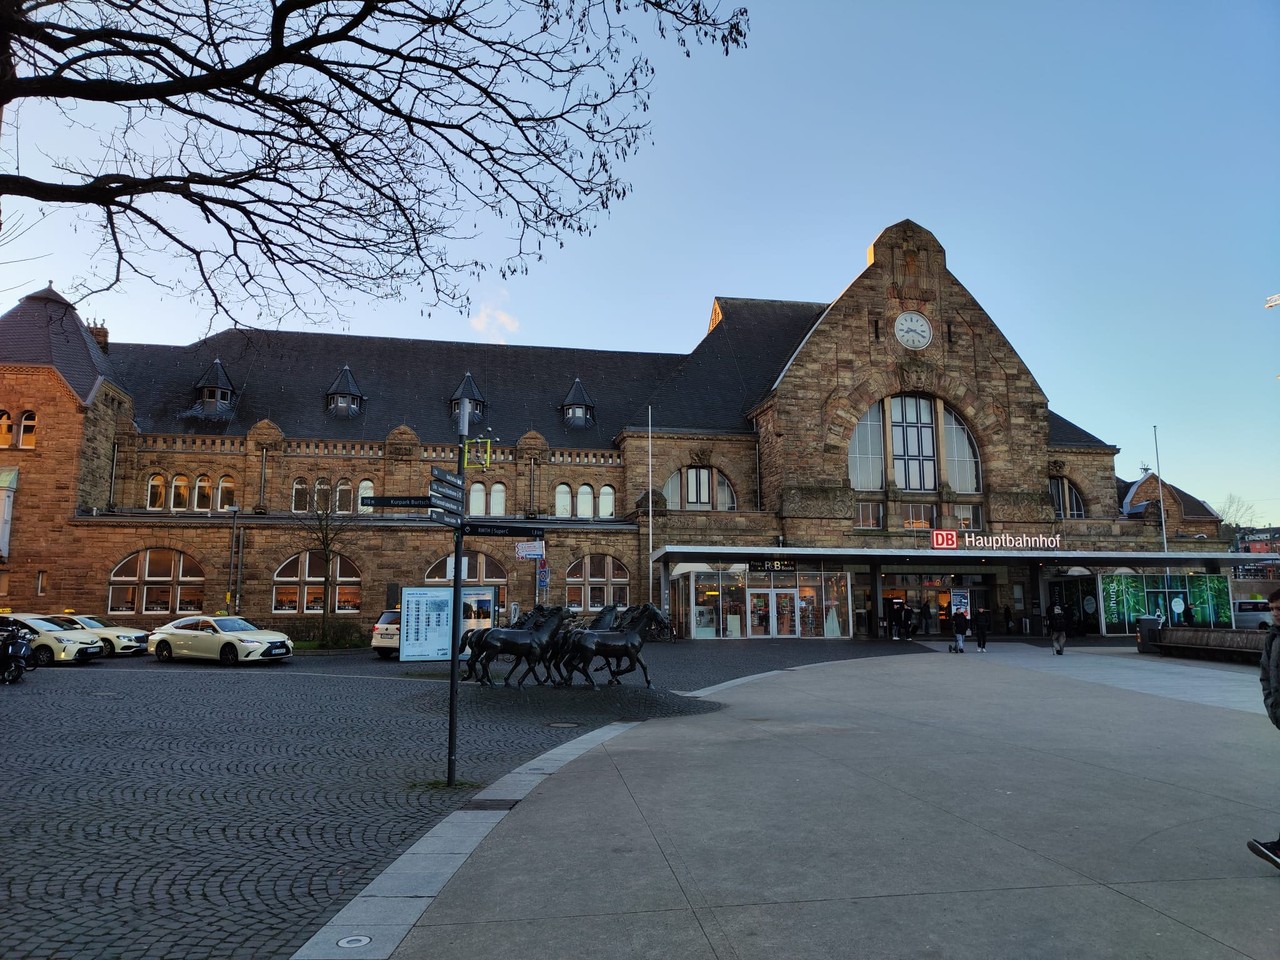 Aachener Hauptbahnhof (Aachen Central Station)